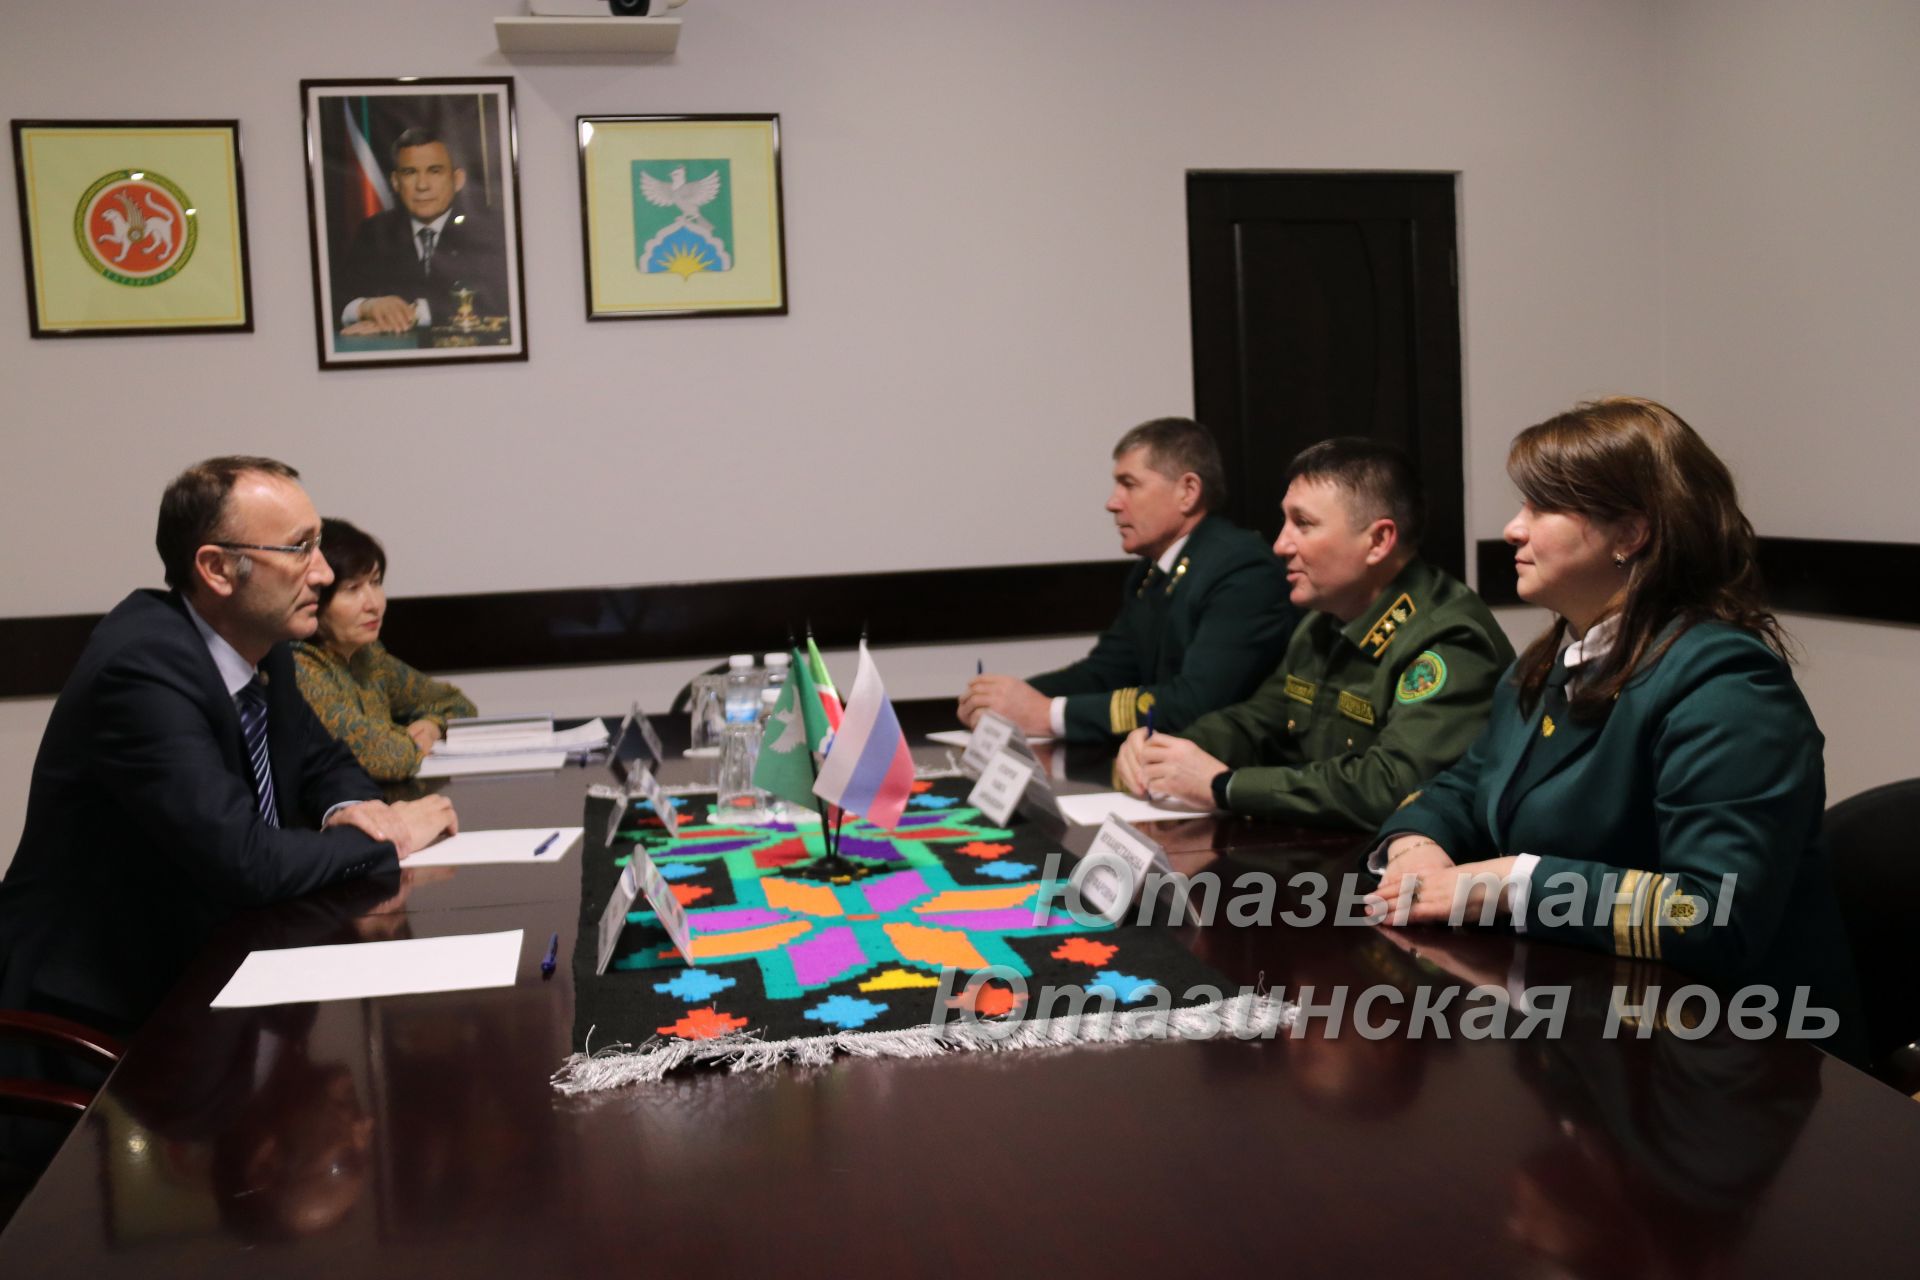 Ютазинский район с рабочим визитом посетил министр лесного хозяйства РТ Равиль Кузюров